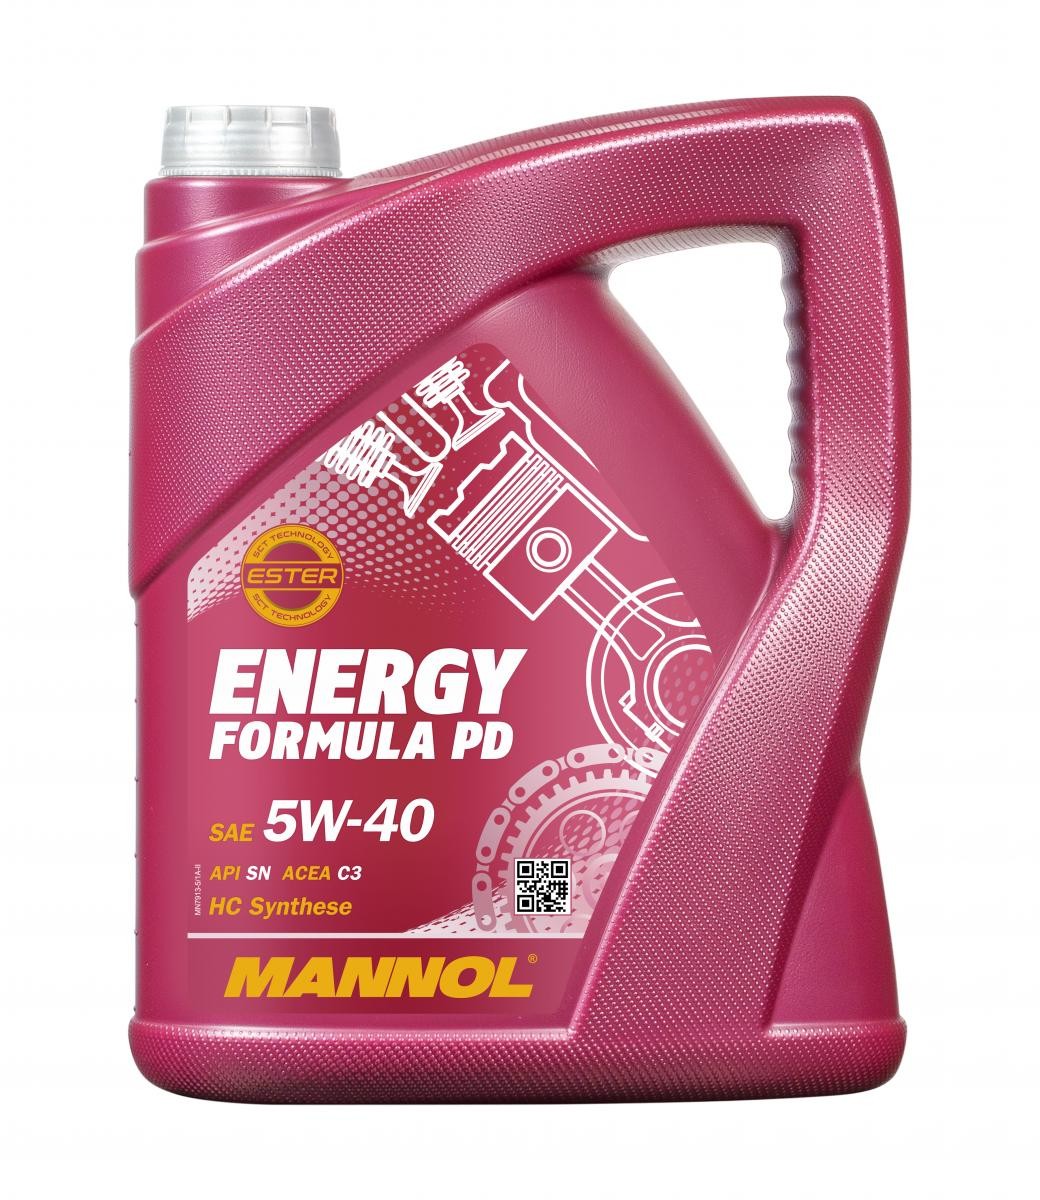 MANNOL ENERGY FORMULA PD MN7913-5 Motorenöl 5W-40, 5l, Synthetiköl